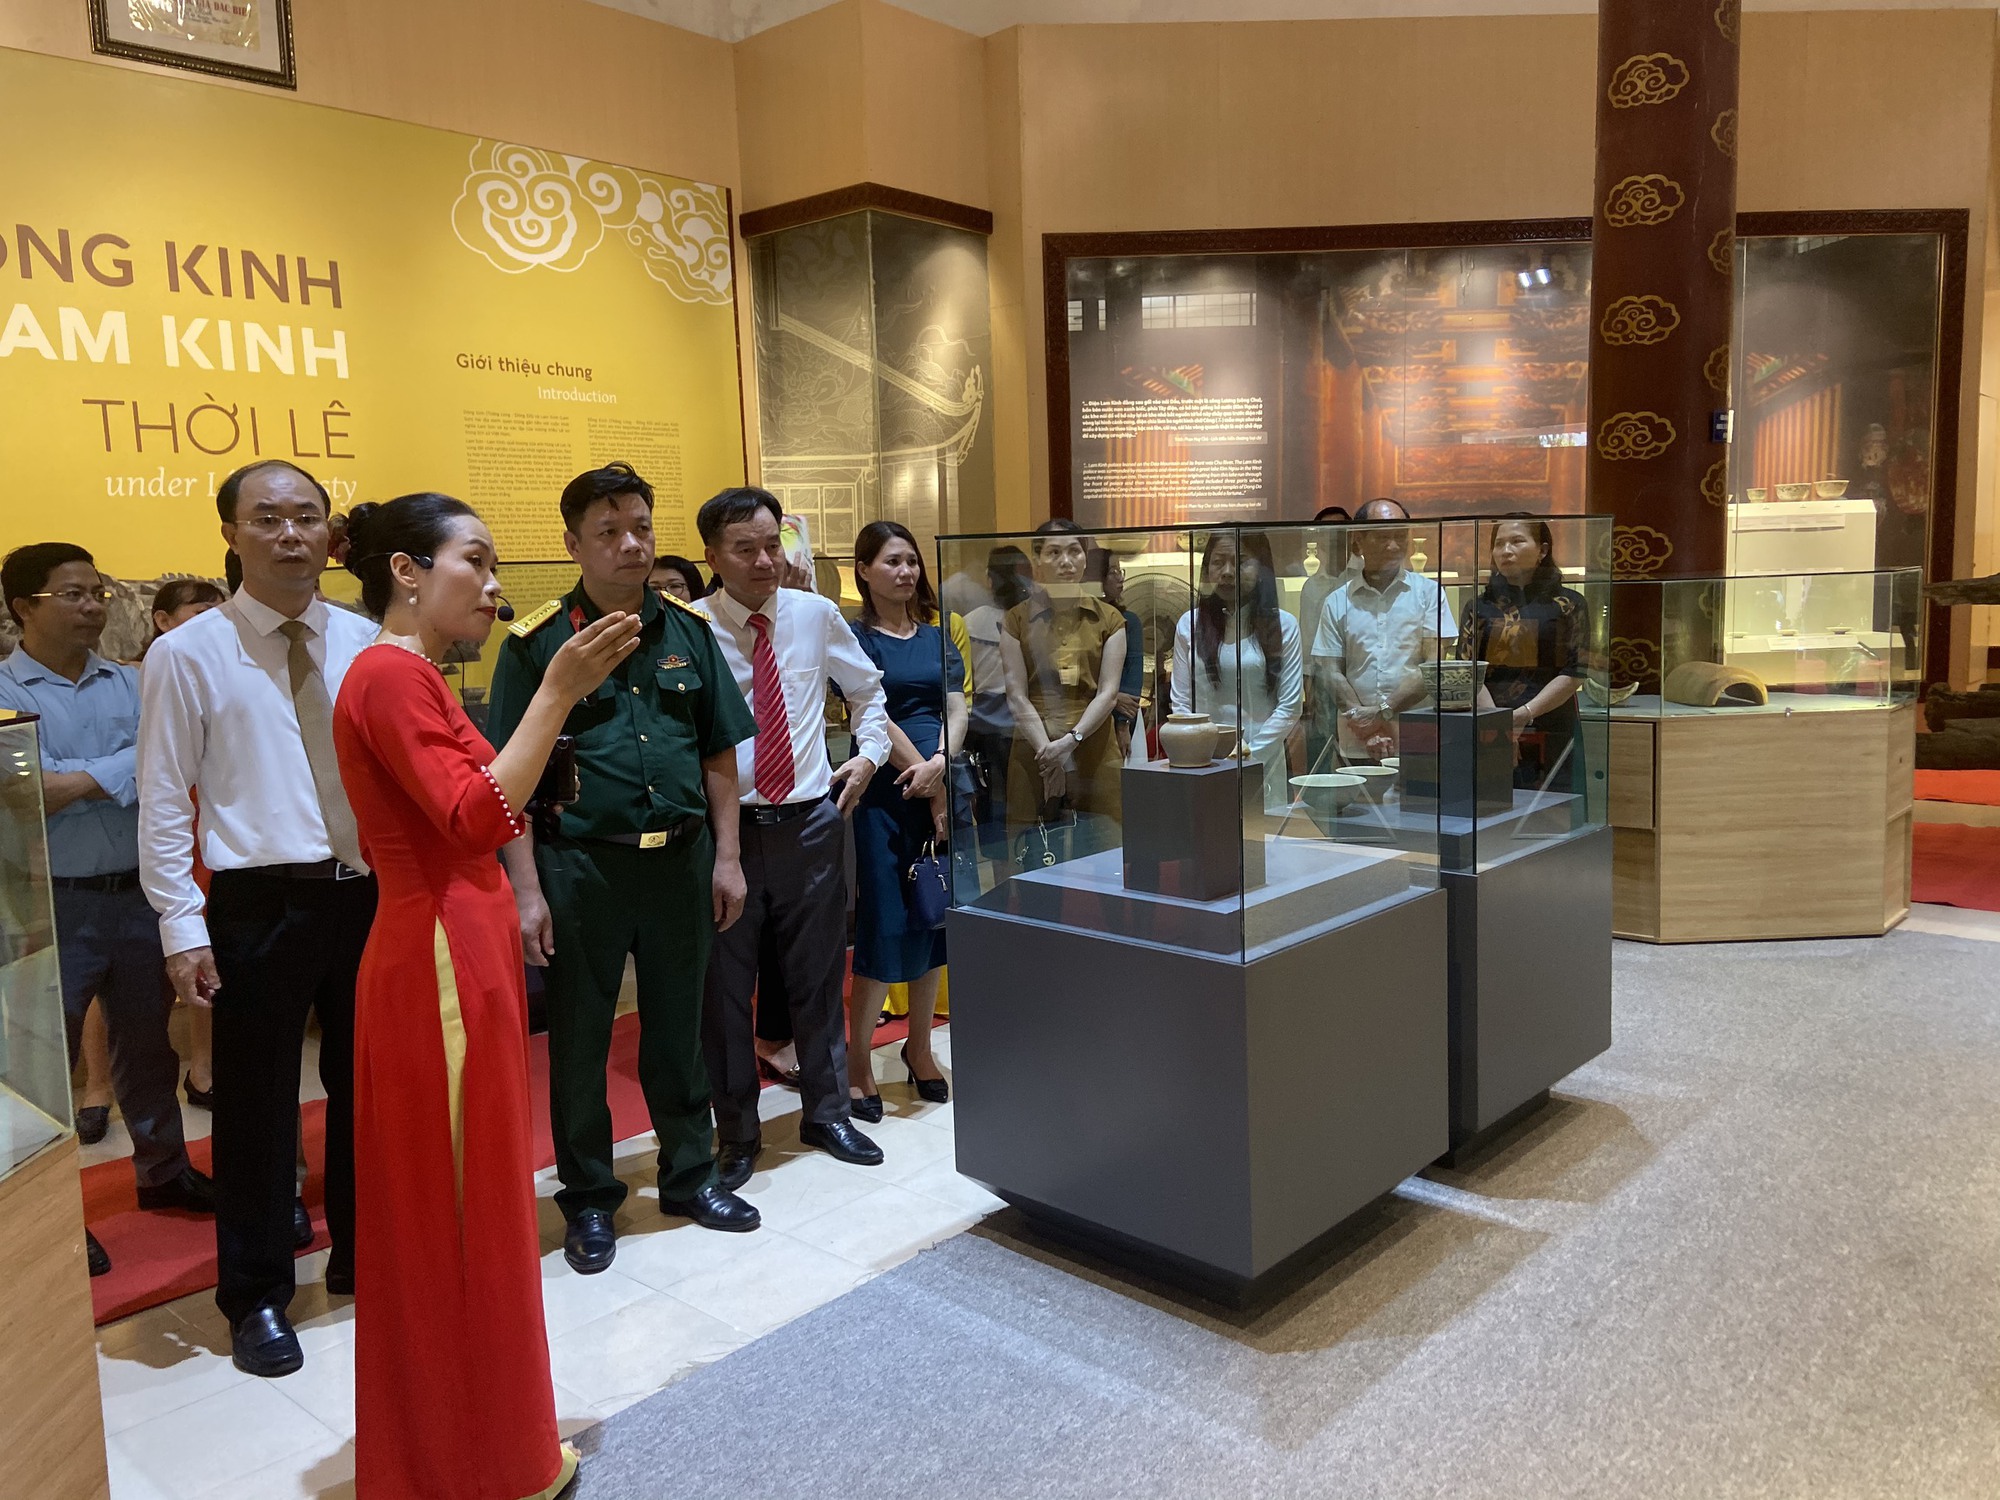 Lần đầu tiên trưng bày 36 hiện vật tiêu biểu thời Lê, tìm thấy ở Đông Kinh và Lam Kinh  - Ảnh 1.